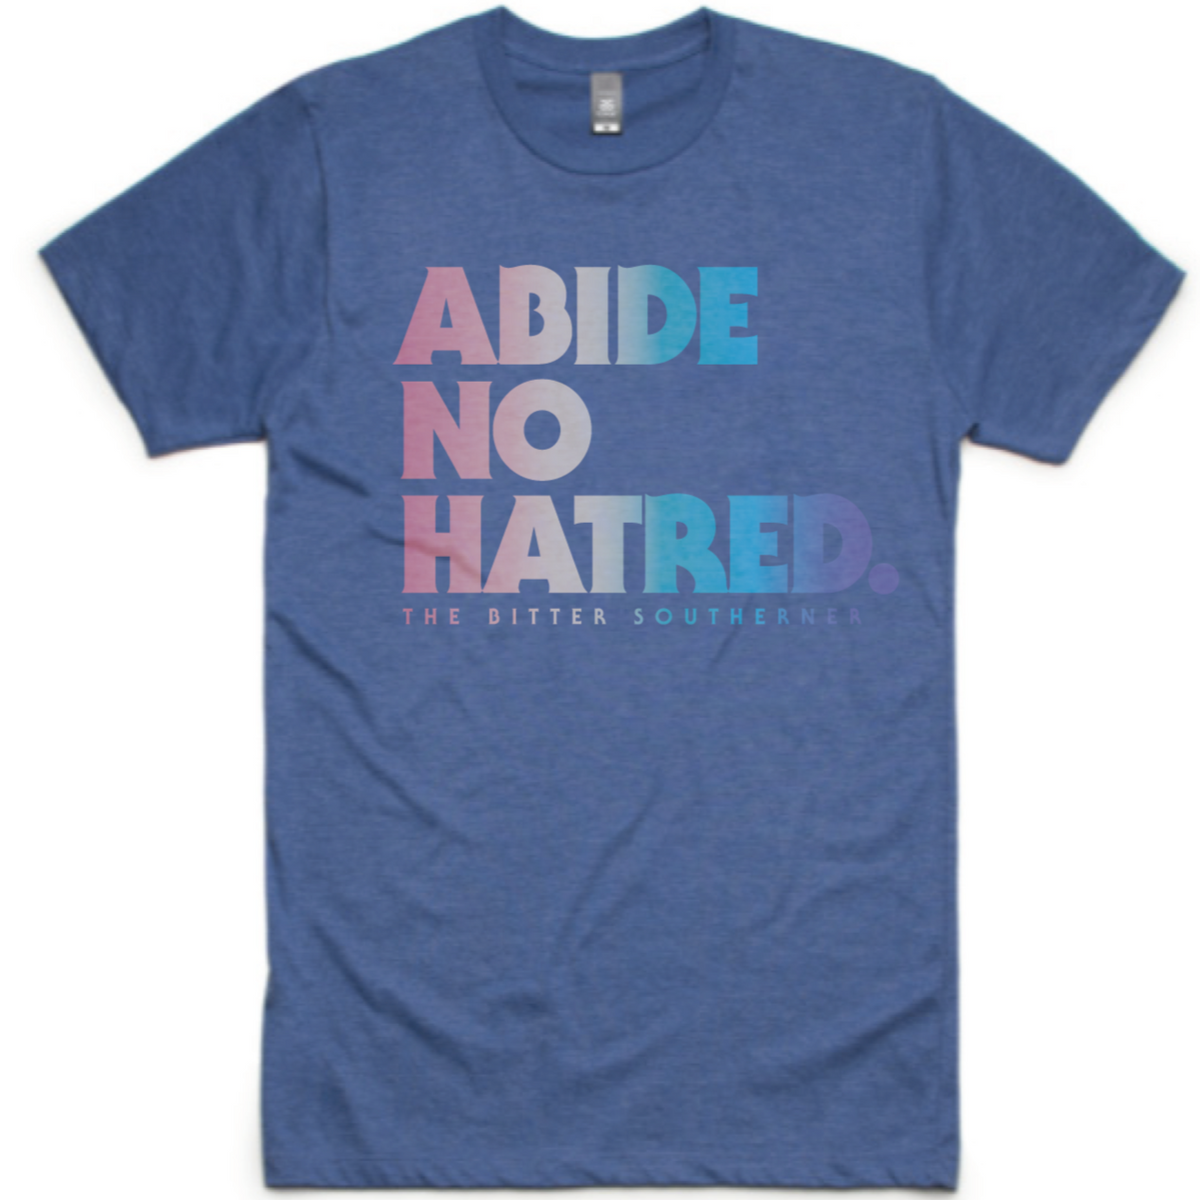 Abide No Hatred